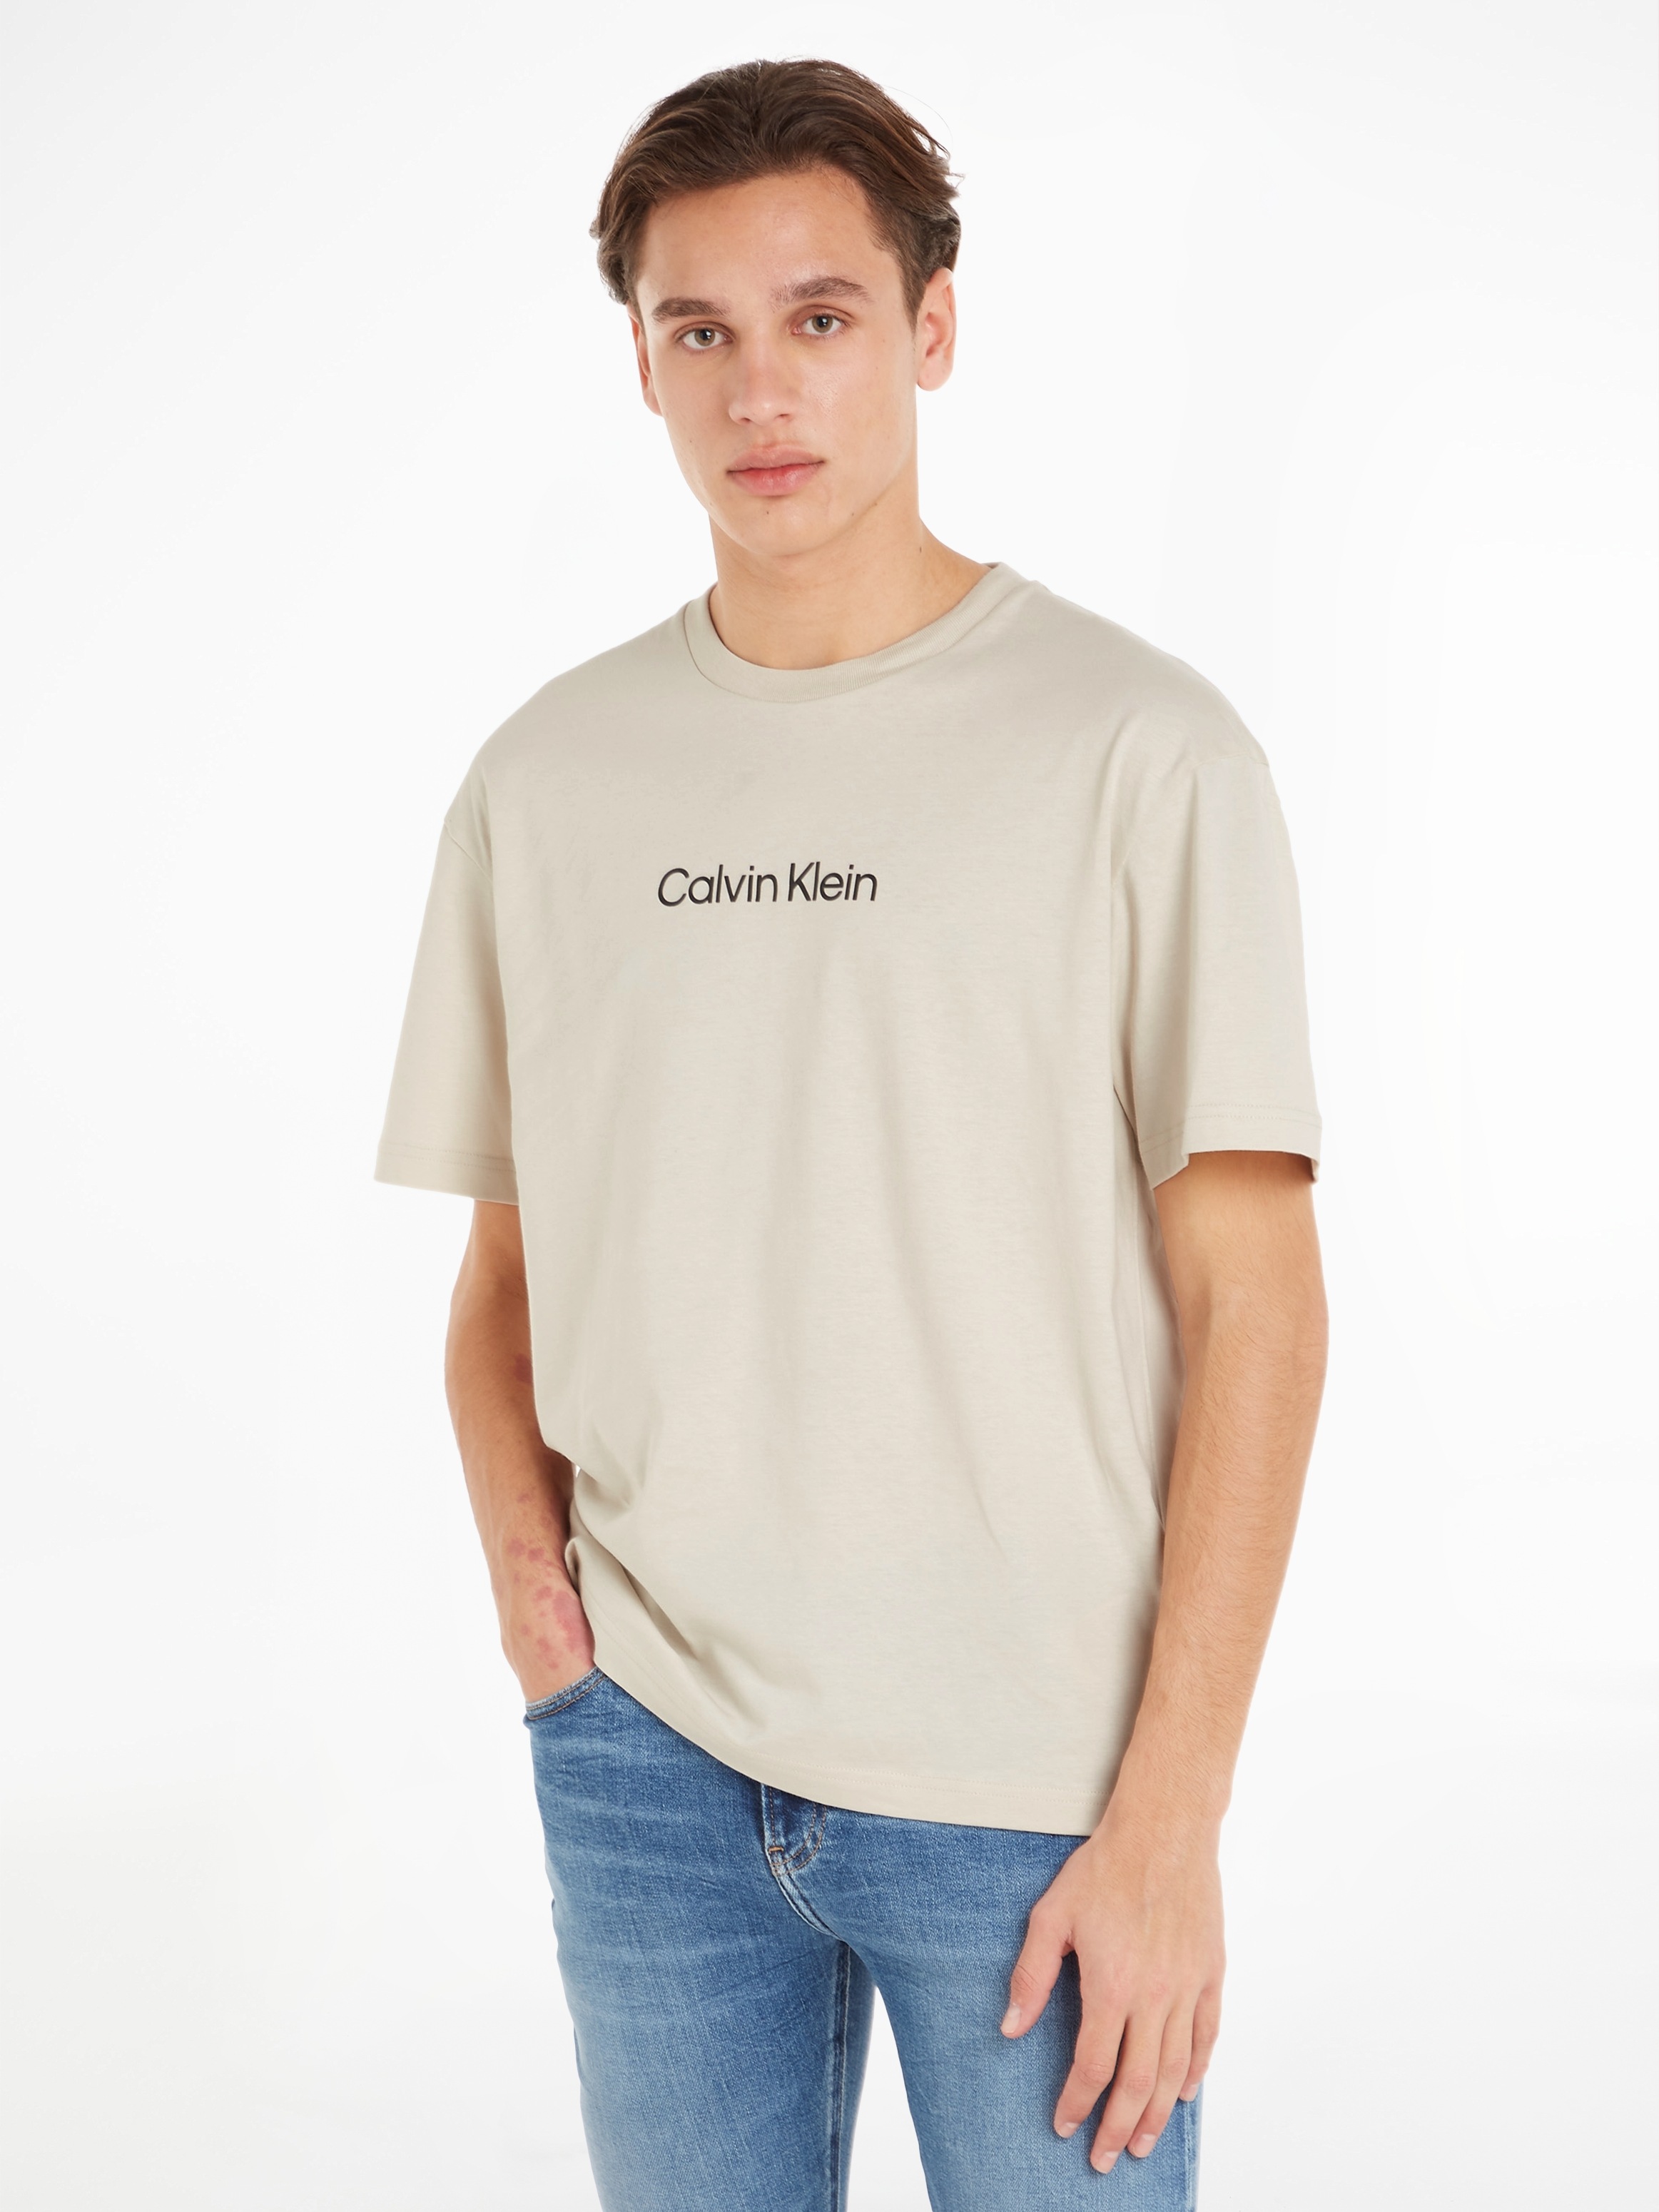 ♕ LOGO COMFORT bei »HERO Klein T-Shirt T-SHIRT«, Calvin mit aufgedrucktem Markenlabel